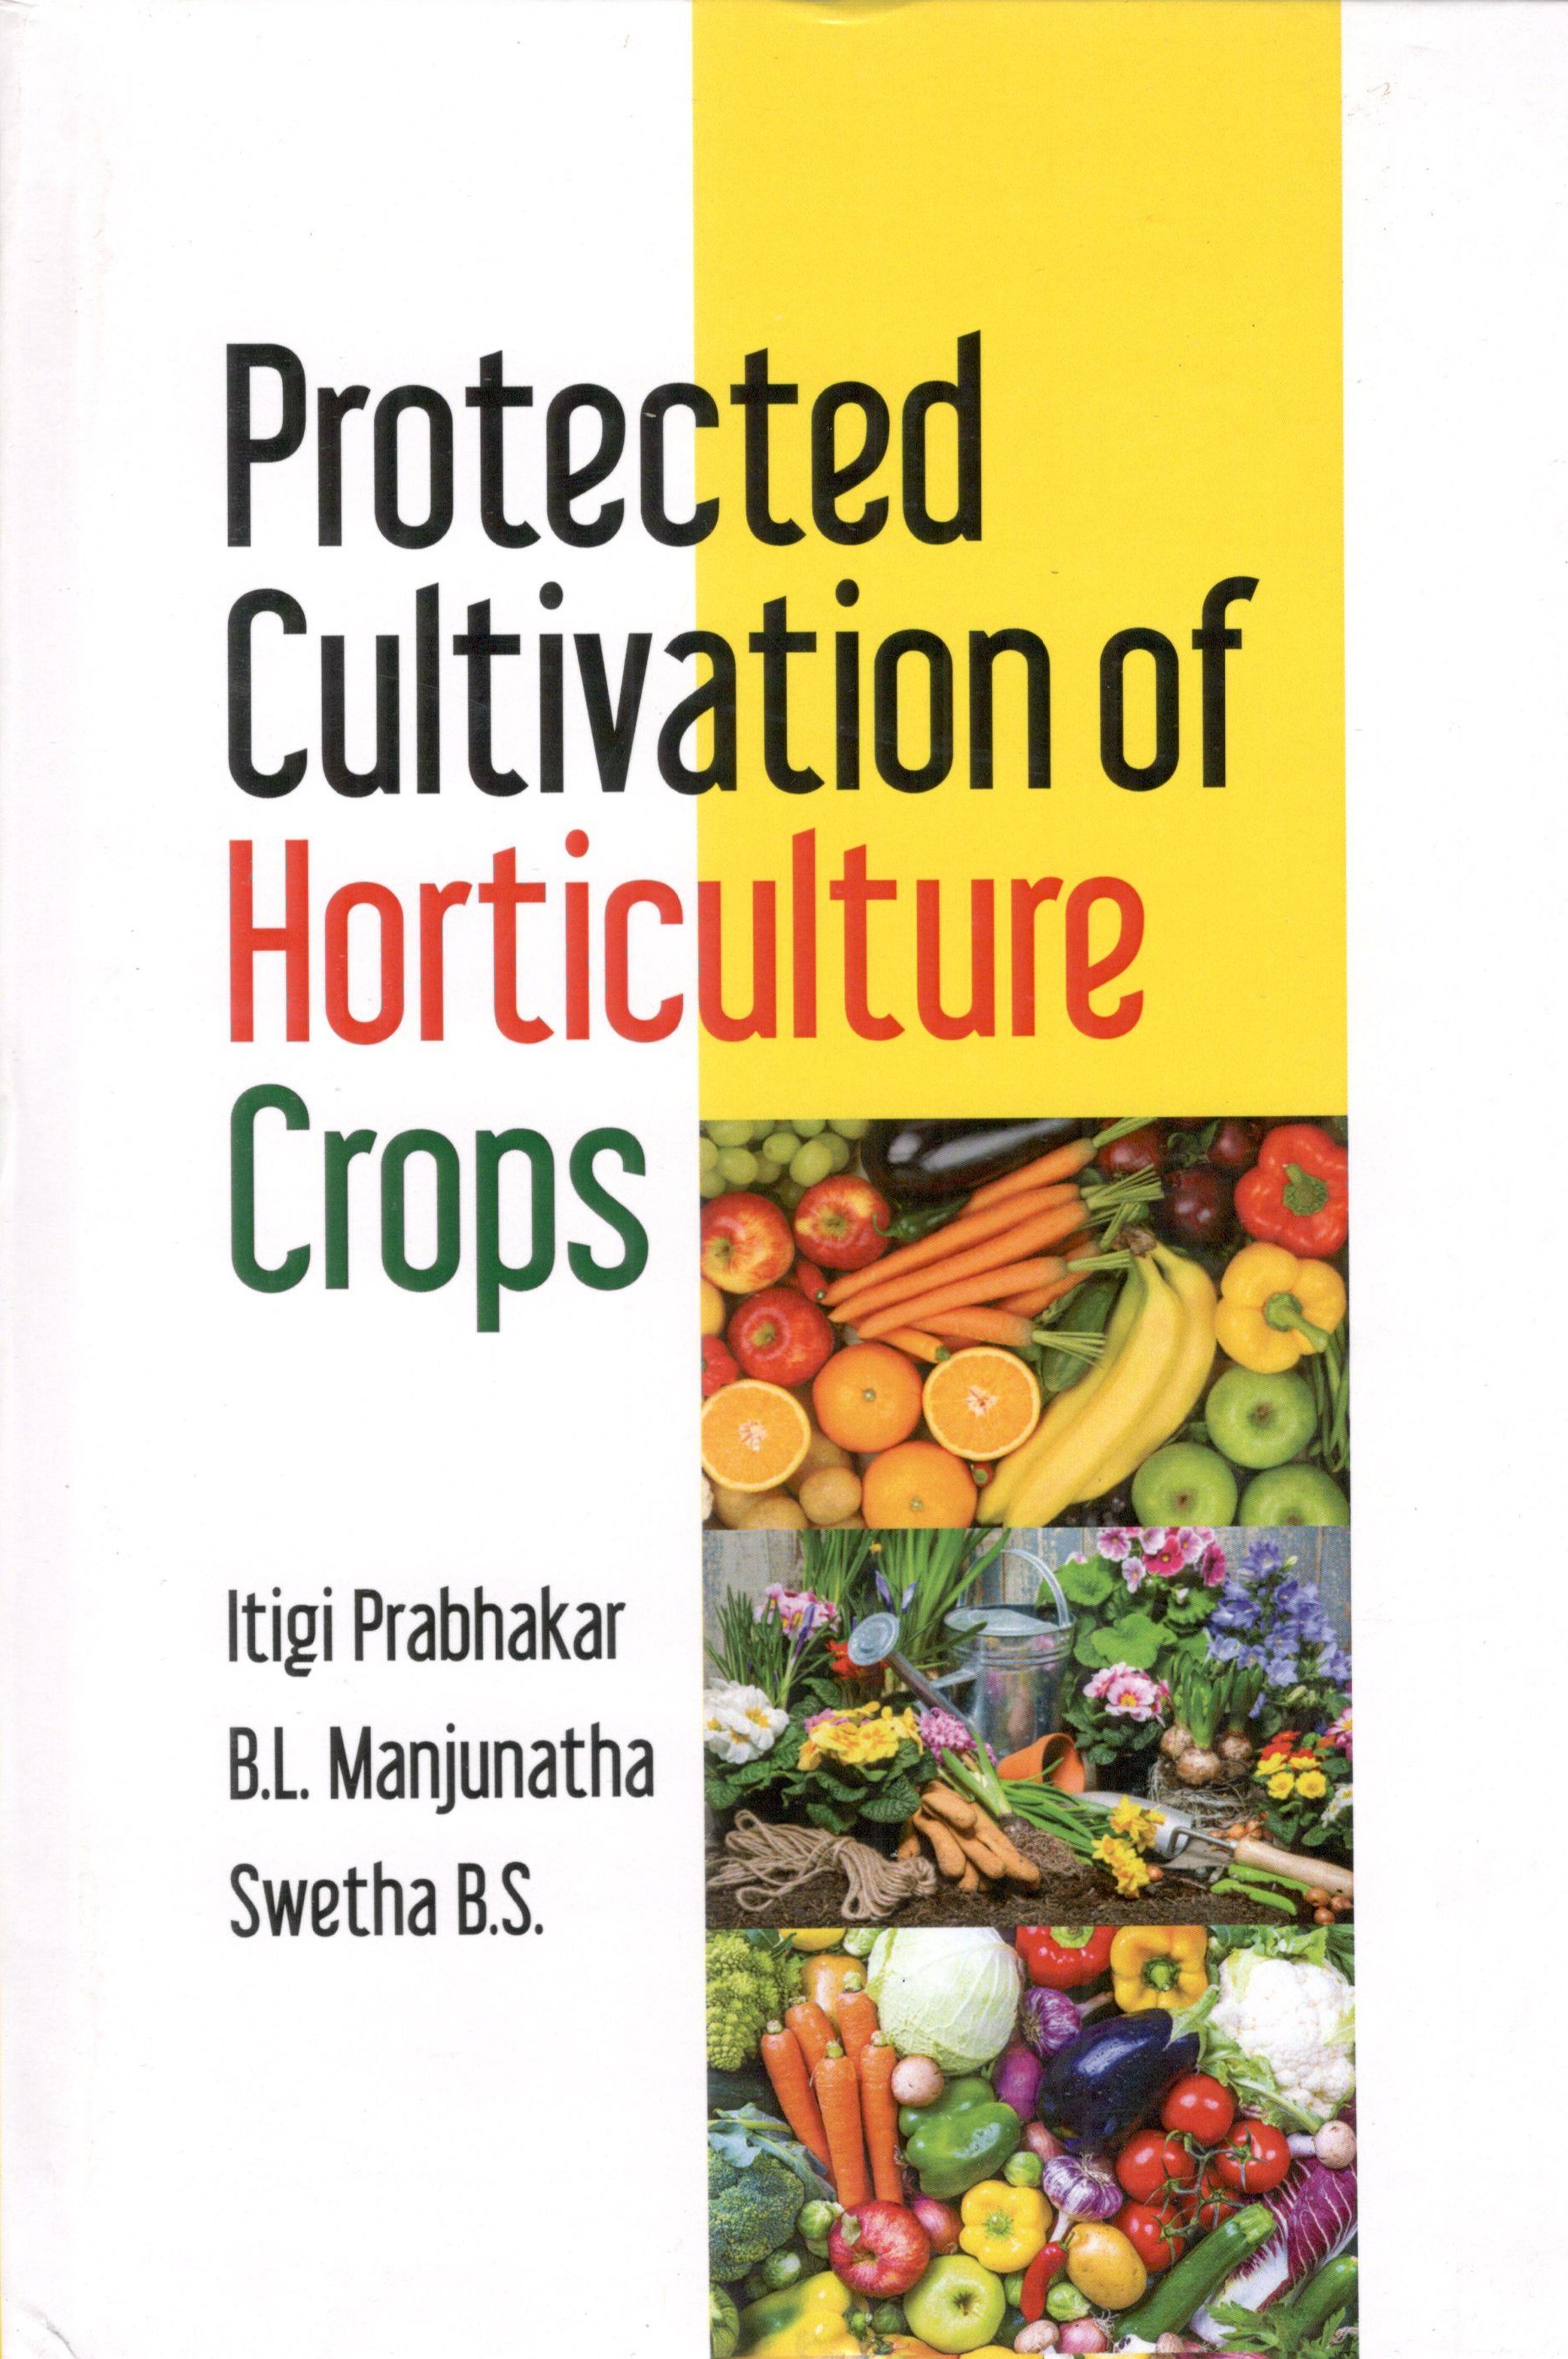 Livre d'horticulture en hindi